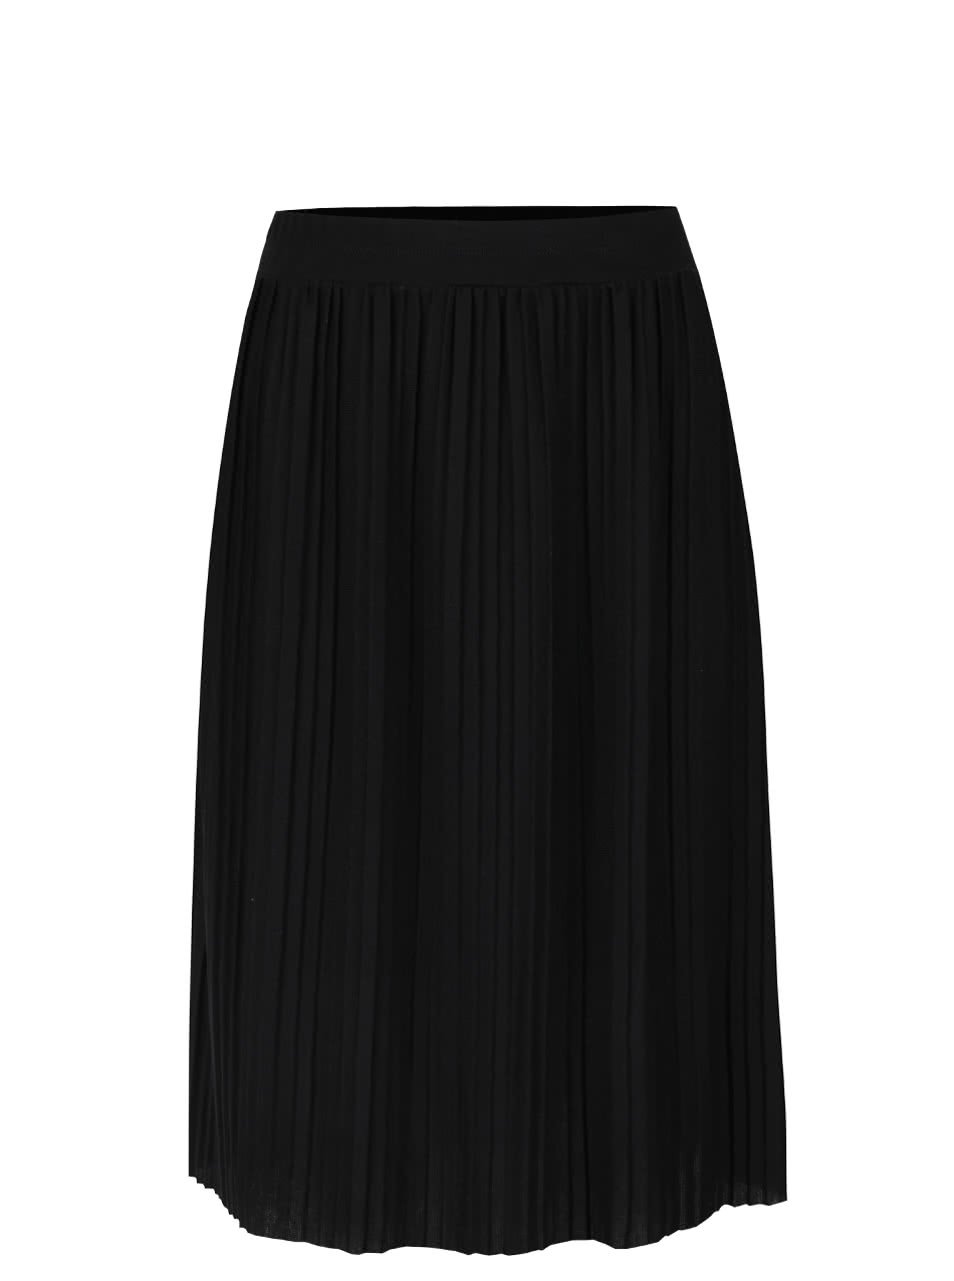 Černá plisovaná sukně Alchymi Anya